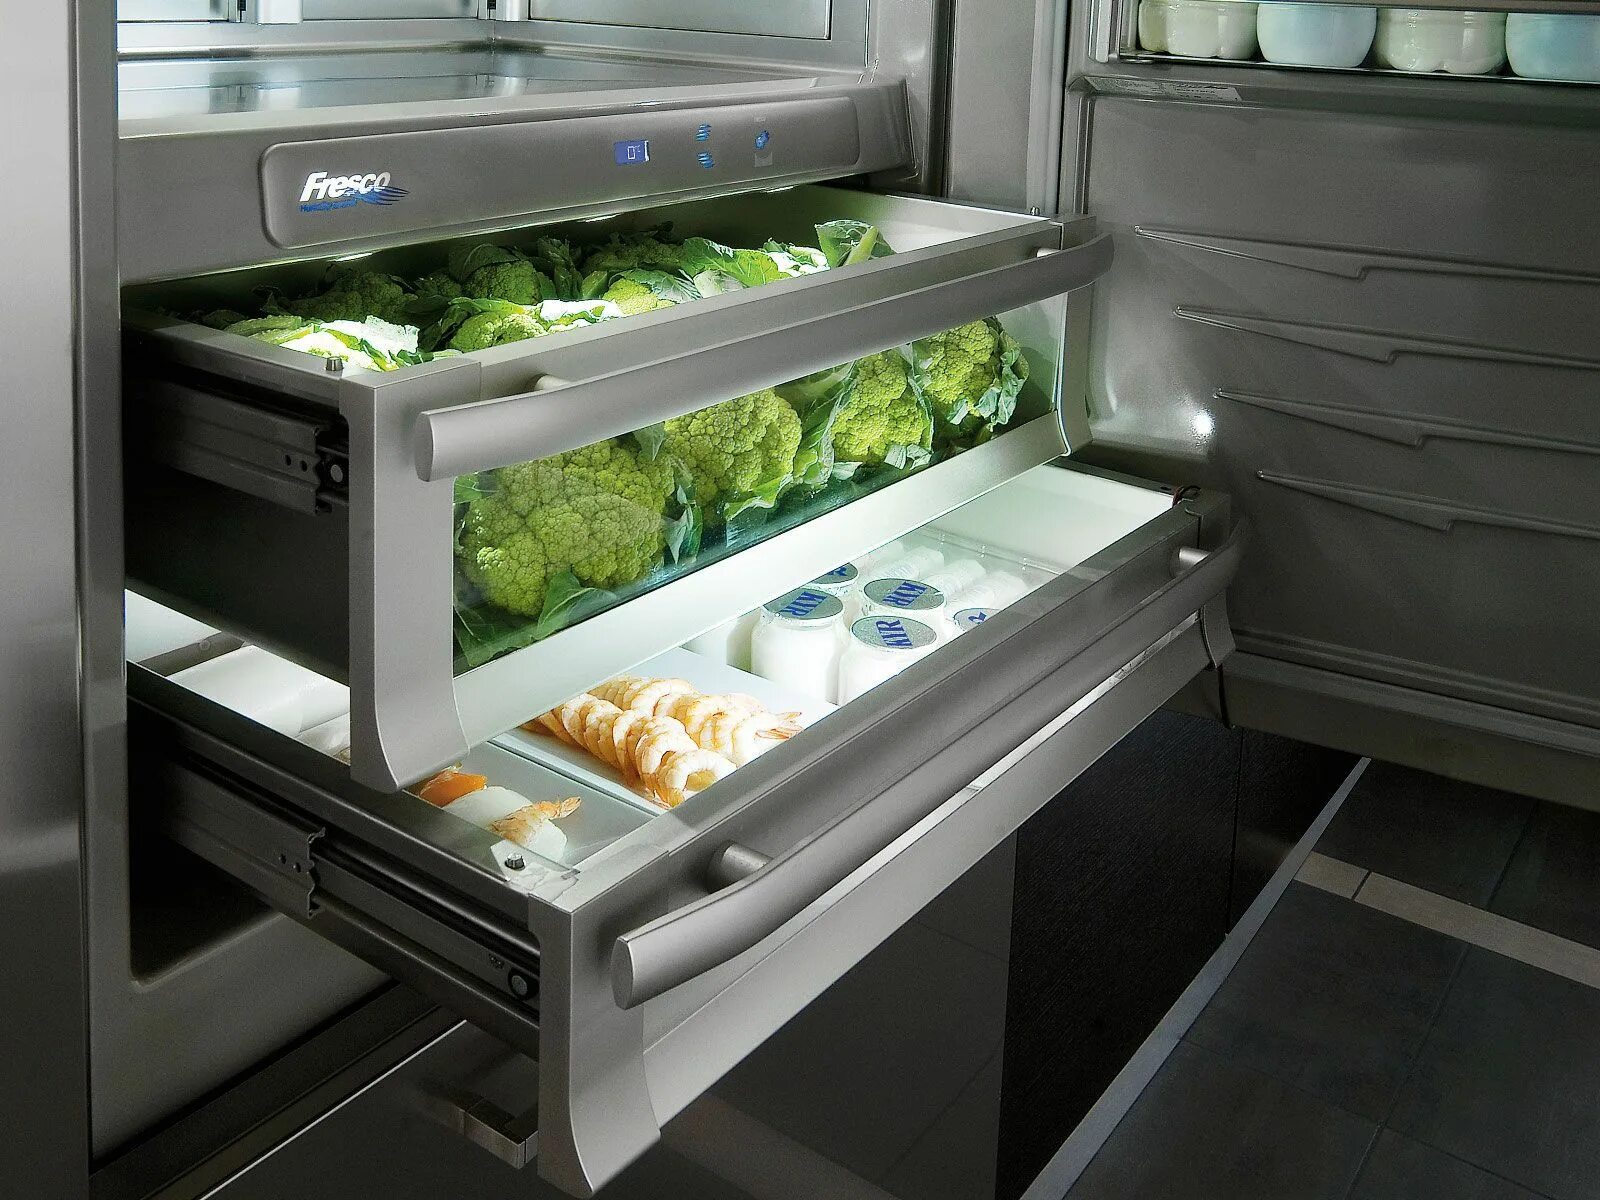 Холодильное хранение овощей. Холодильник Freezer Refrigerator. La Cornue холодильник. Холодильная камера с системой Low Frost. Встраиваемый холодильник Bosch панель управления Cooler Freezer super.